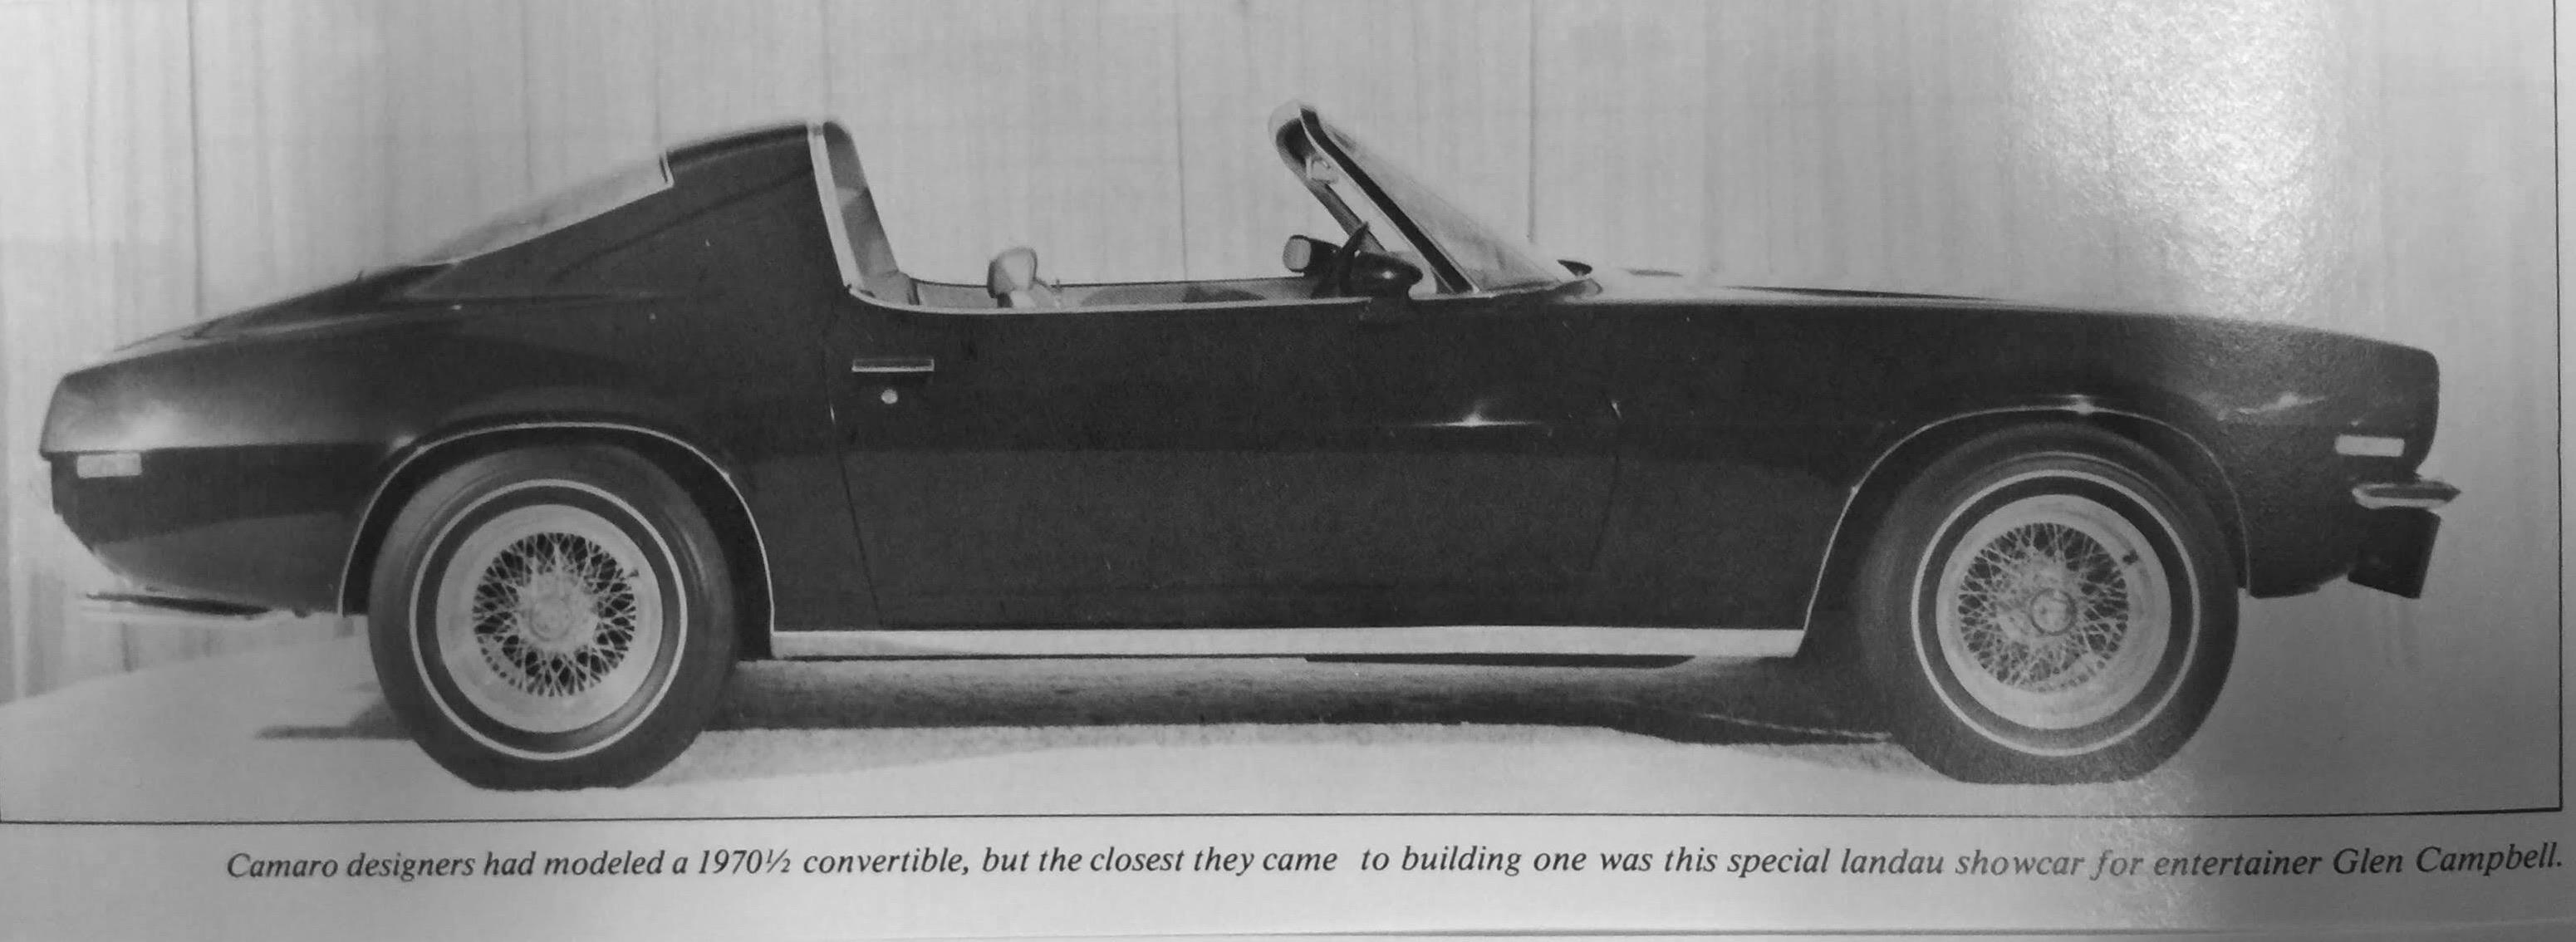 1970.5  Camaro for Glen Campbell.jpg